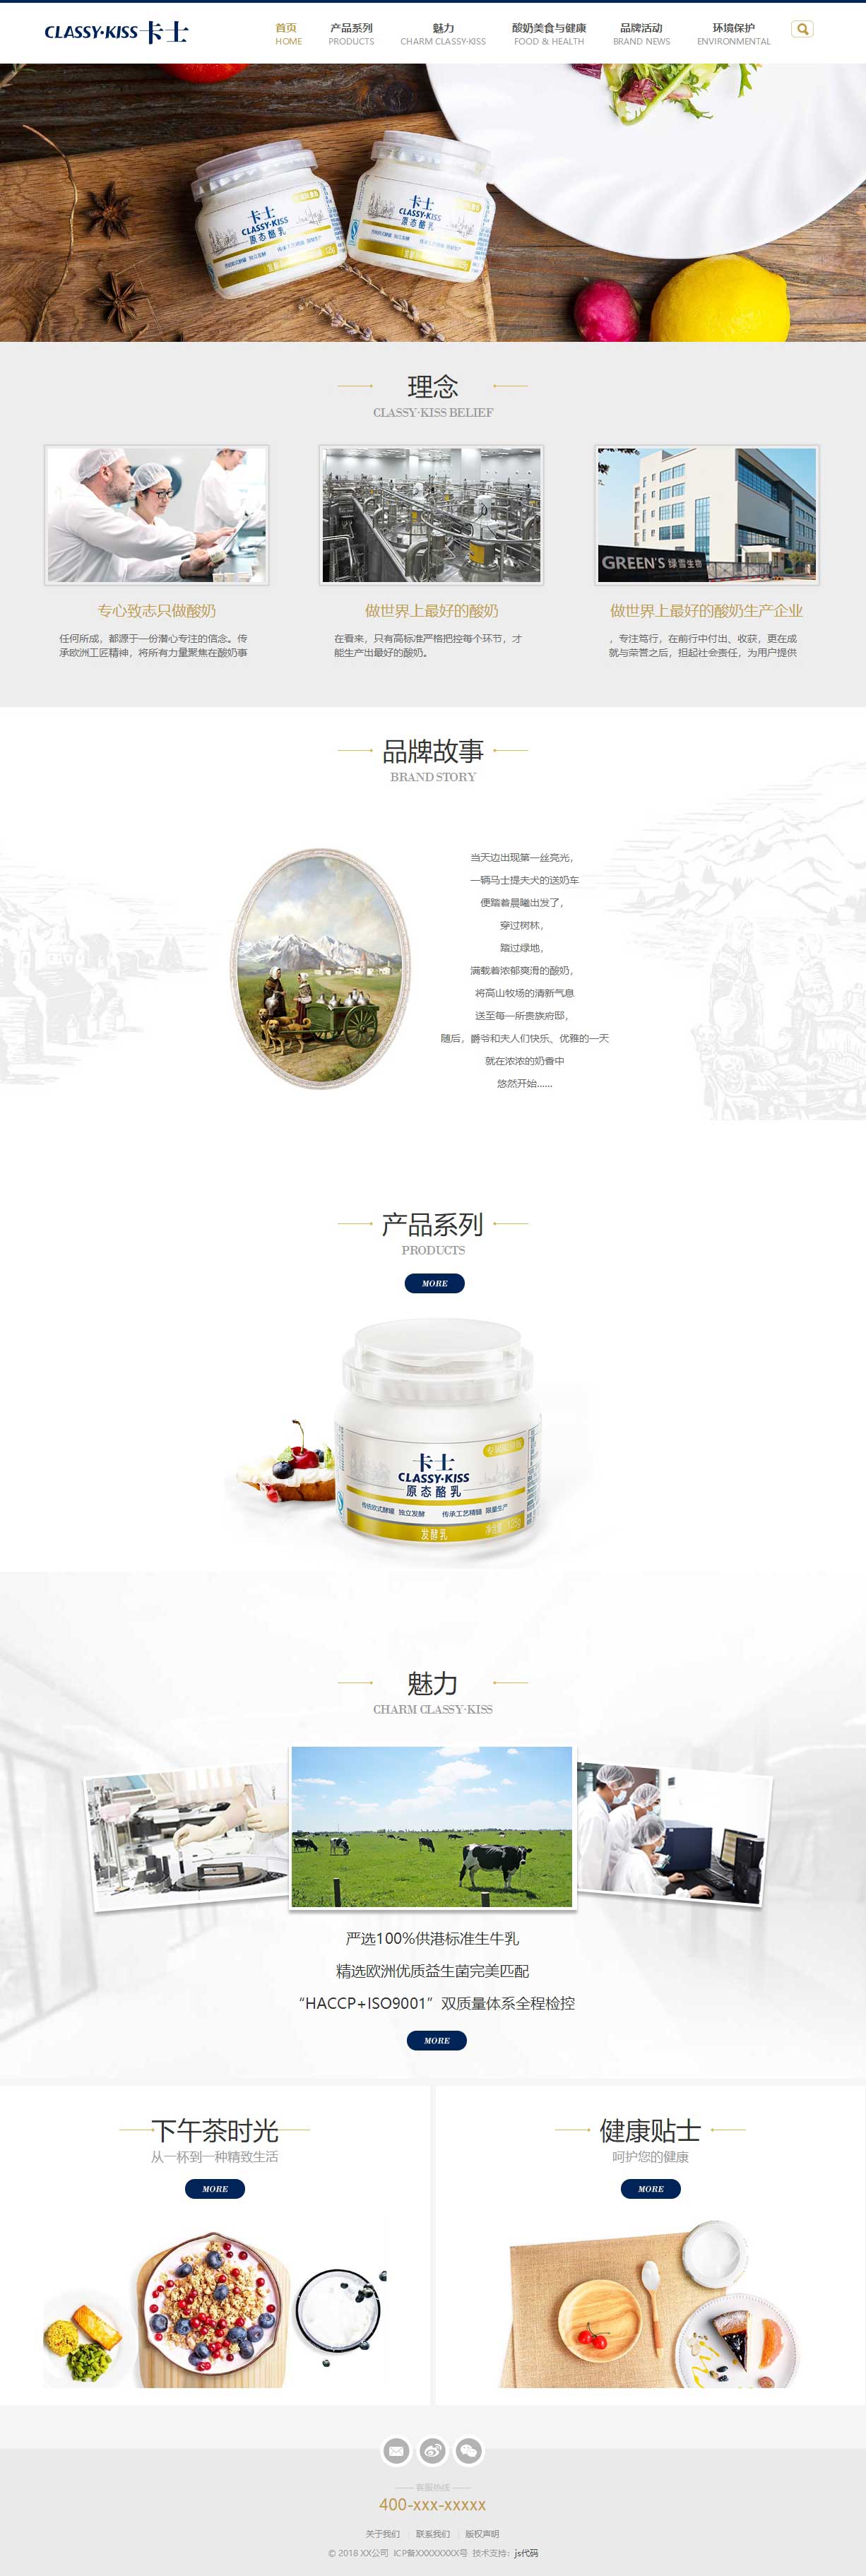 HTML5响应式酸奶奶酪生物乳品公司企业网站模板